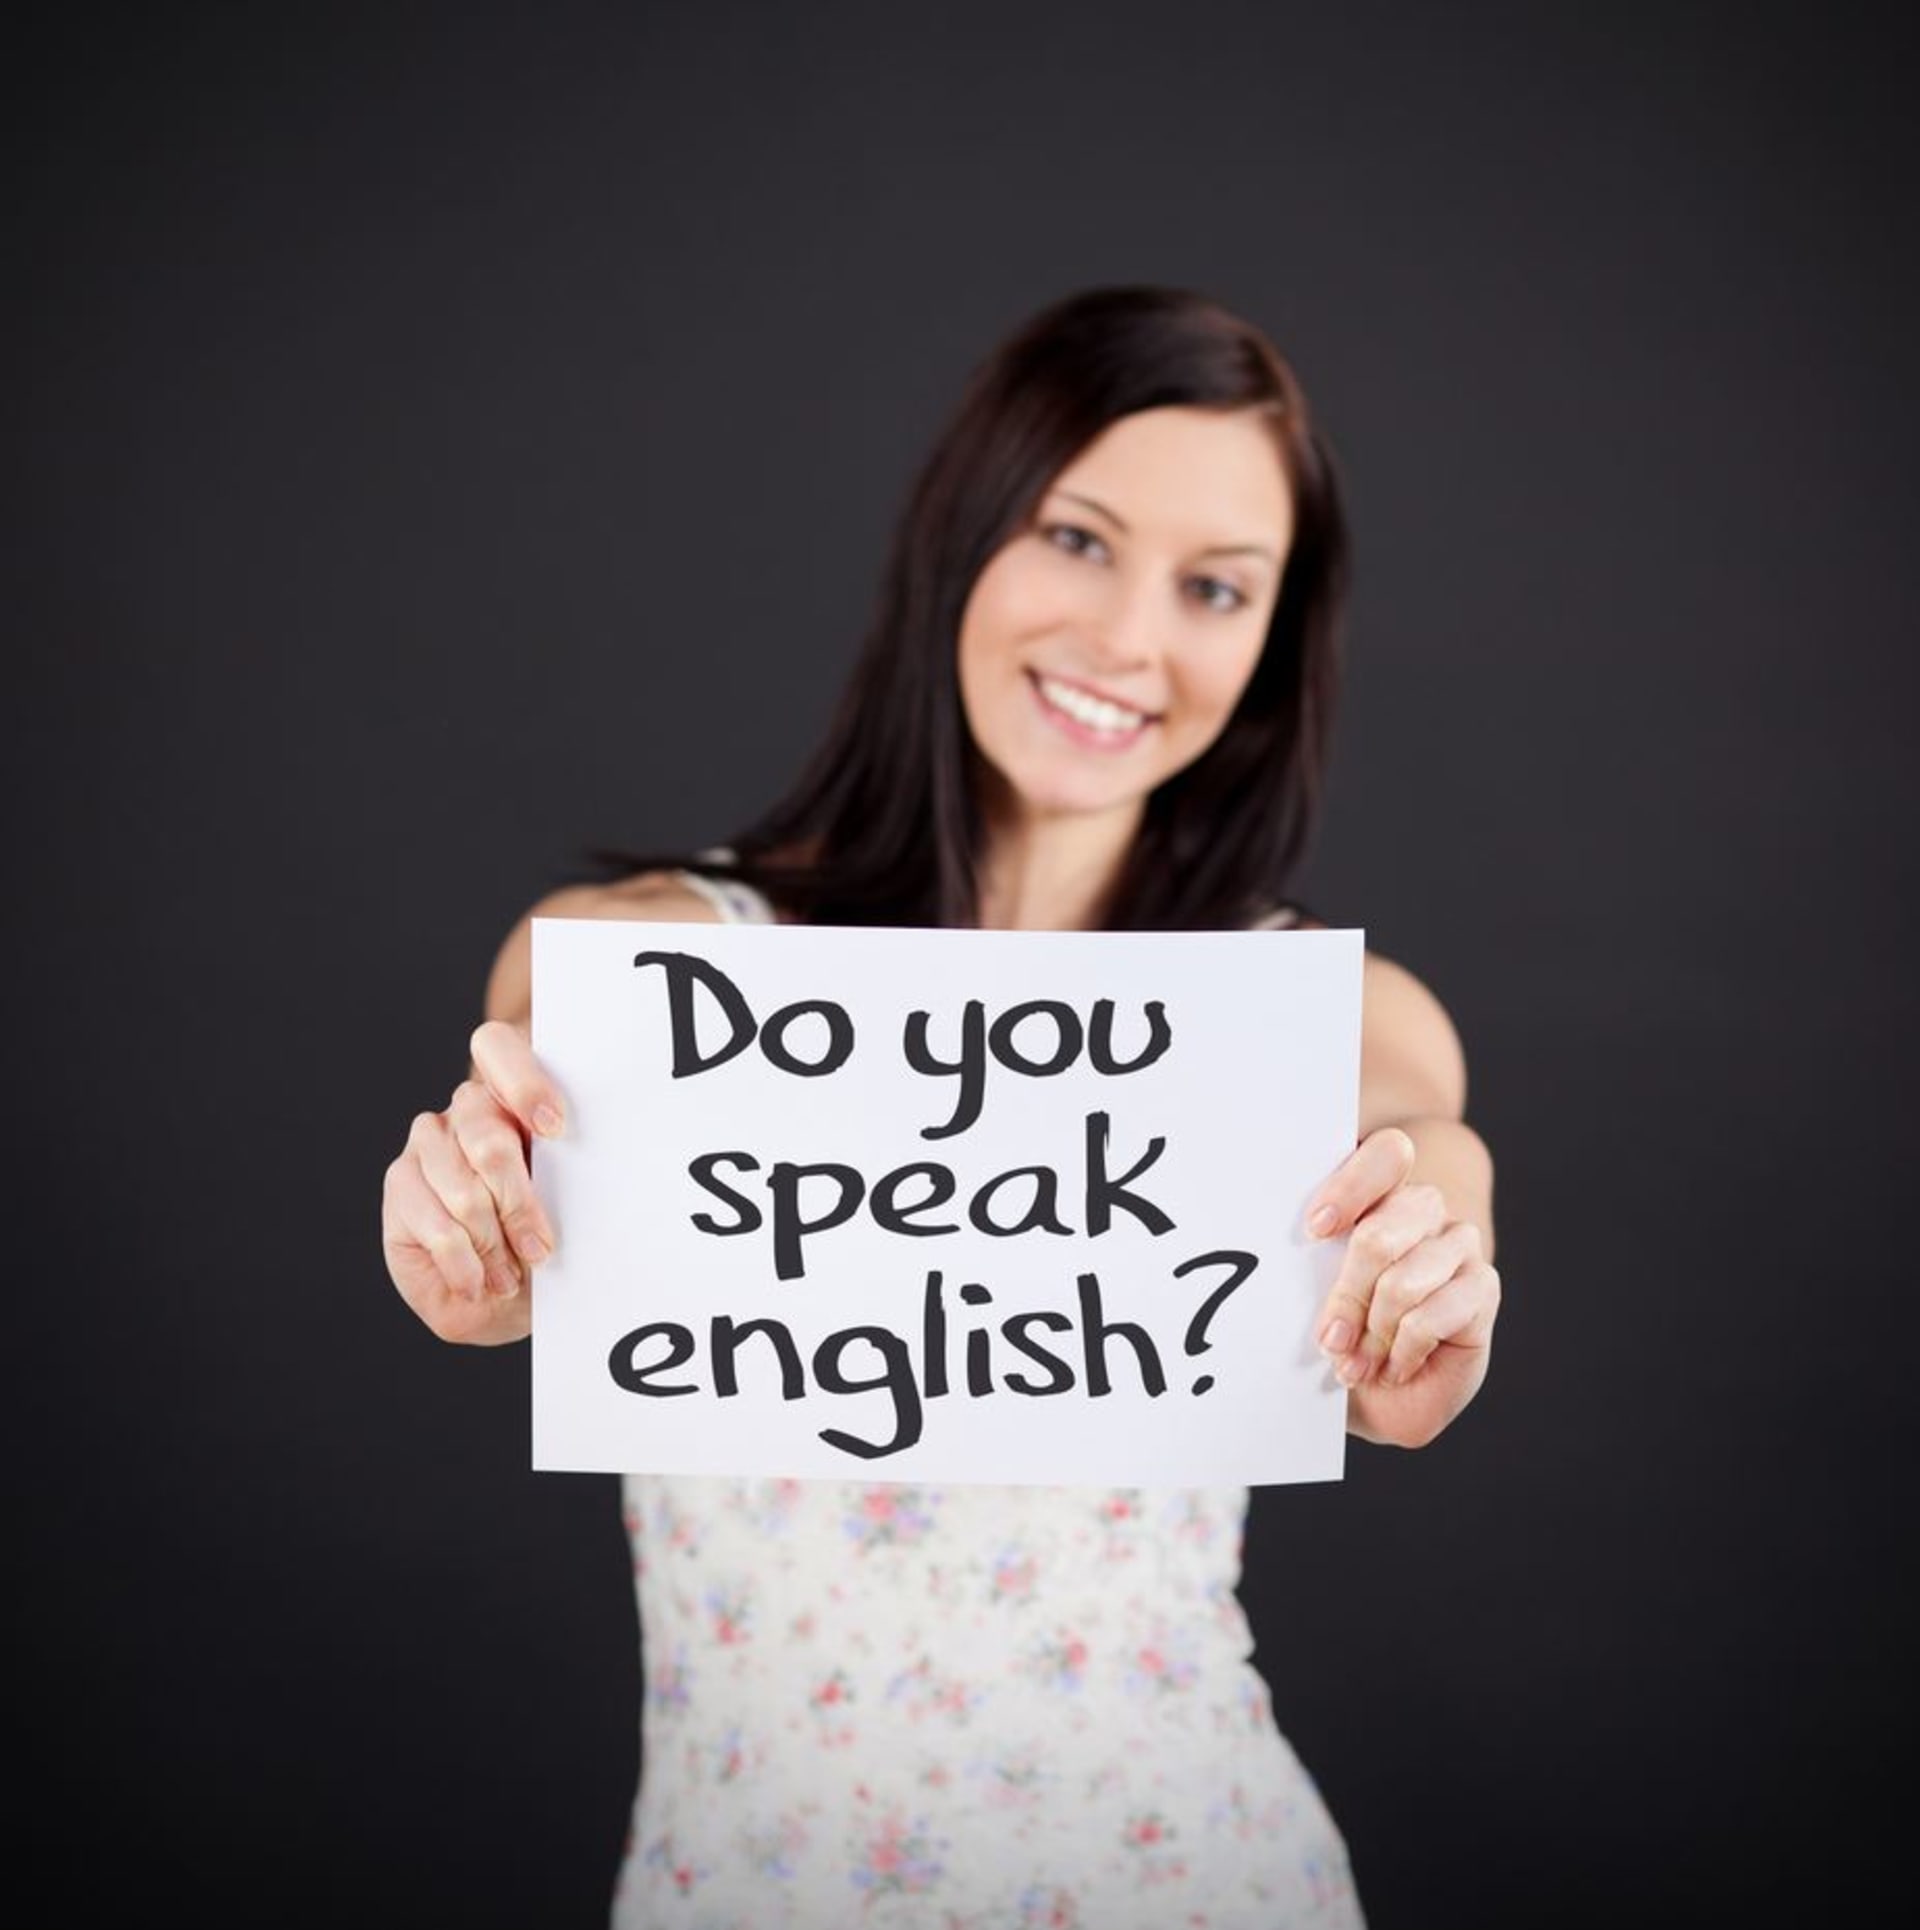 Do you speak english well. Do you speak English. I speak English картинка. Do you speak English фото. Do you speak English на доске.